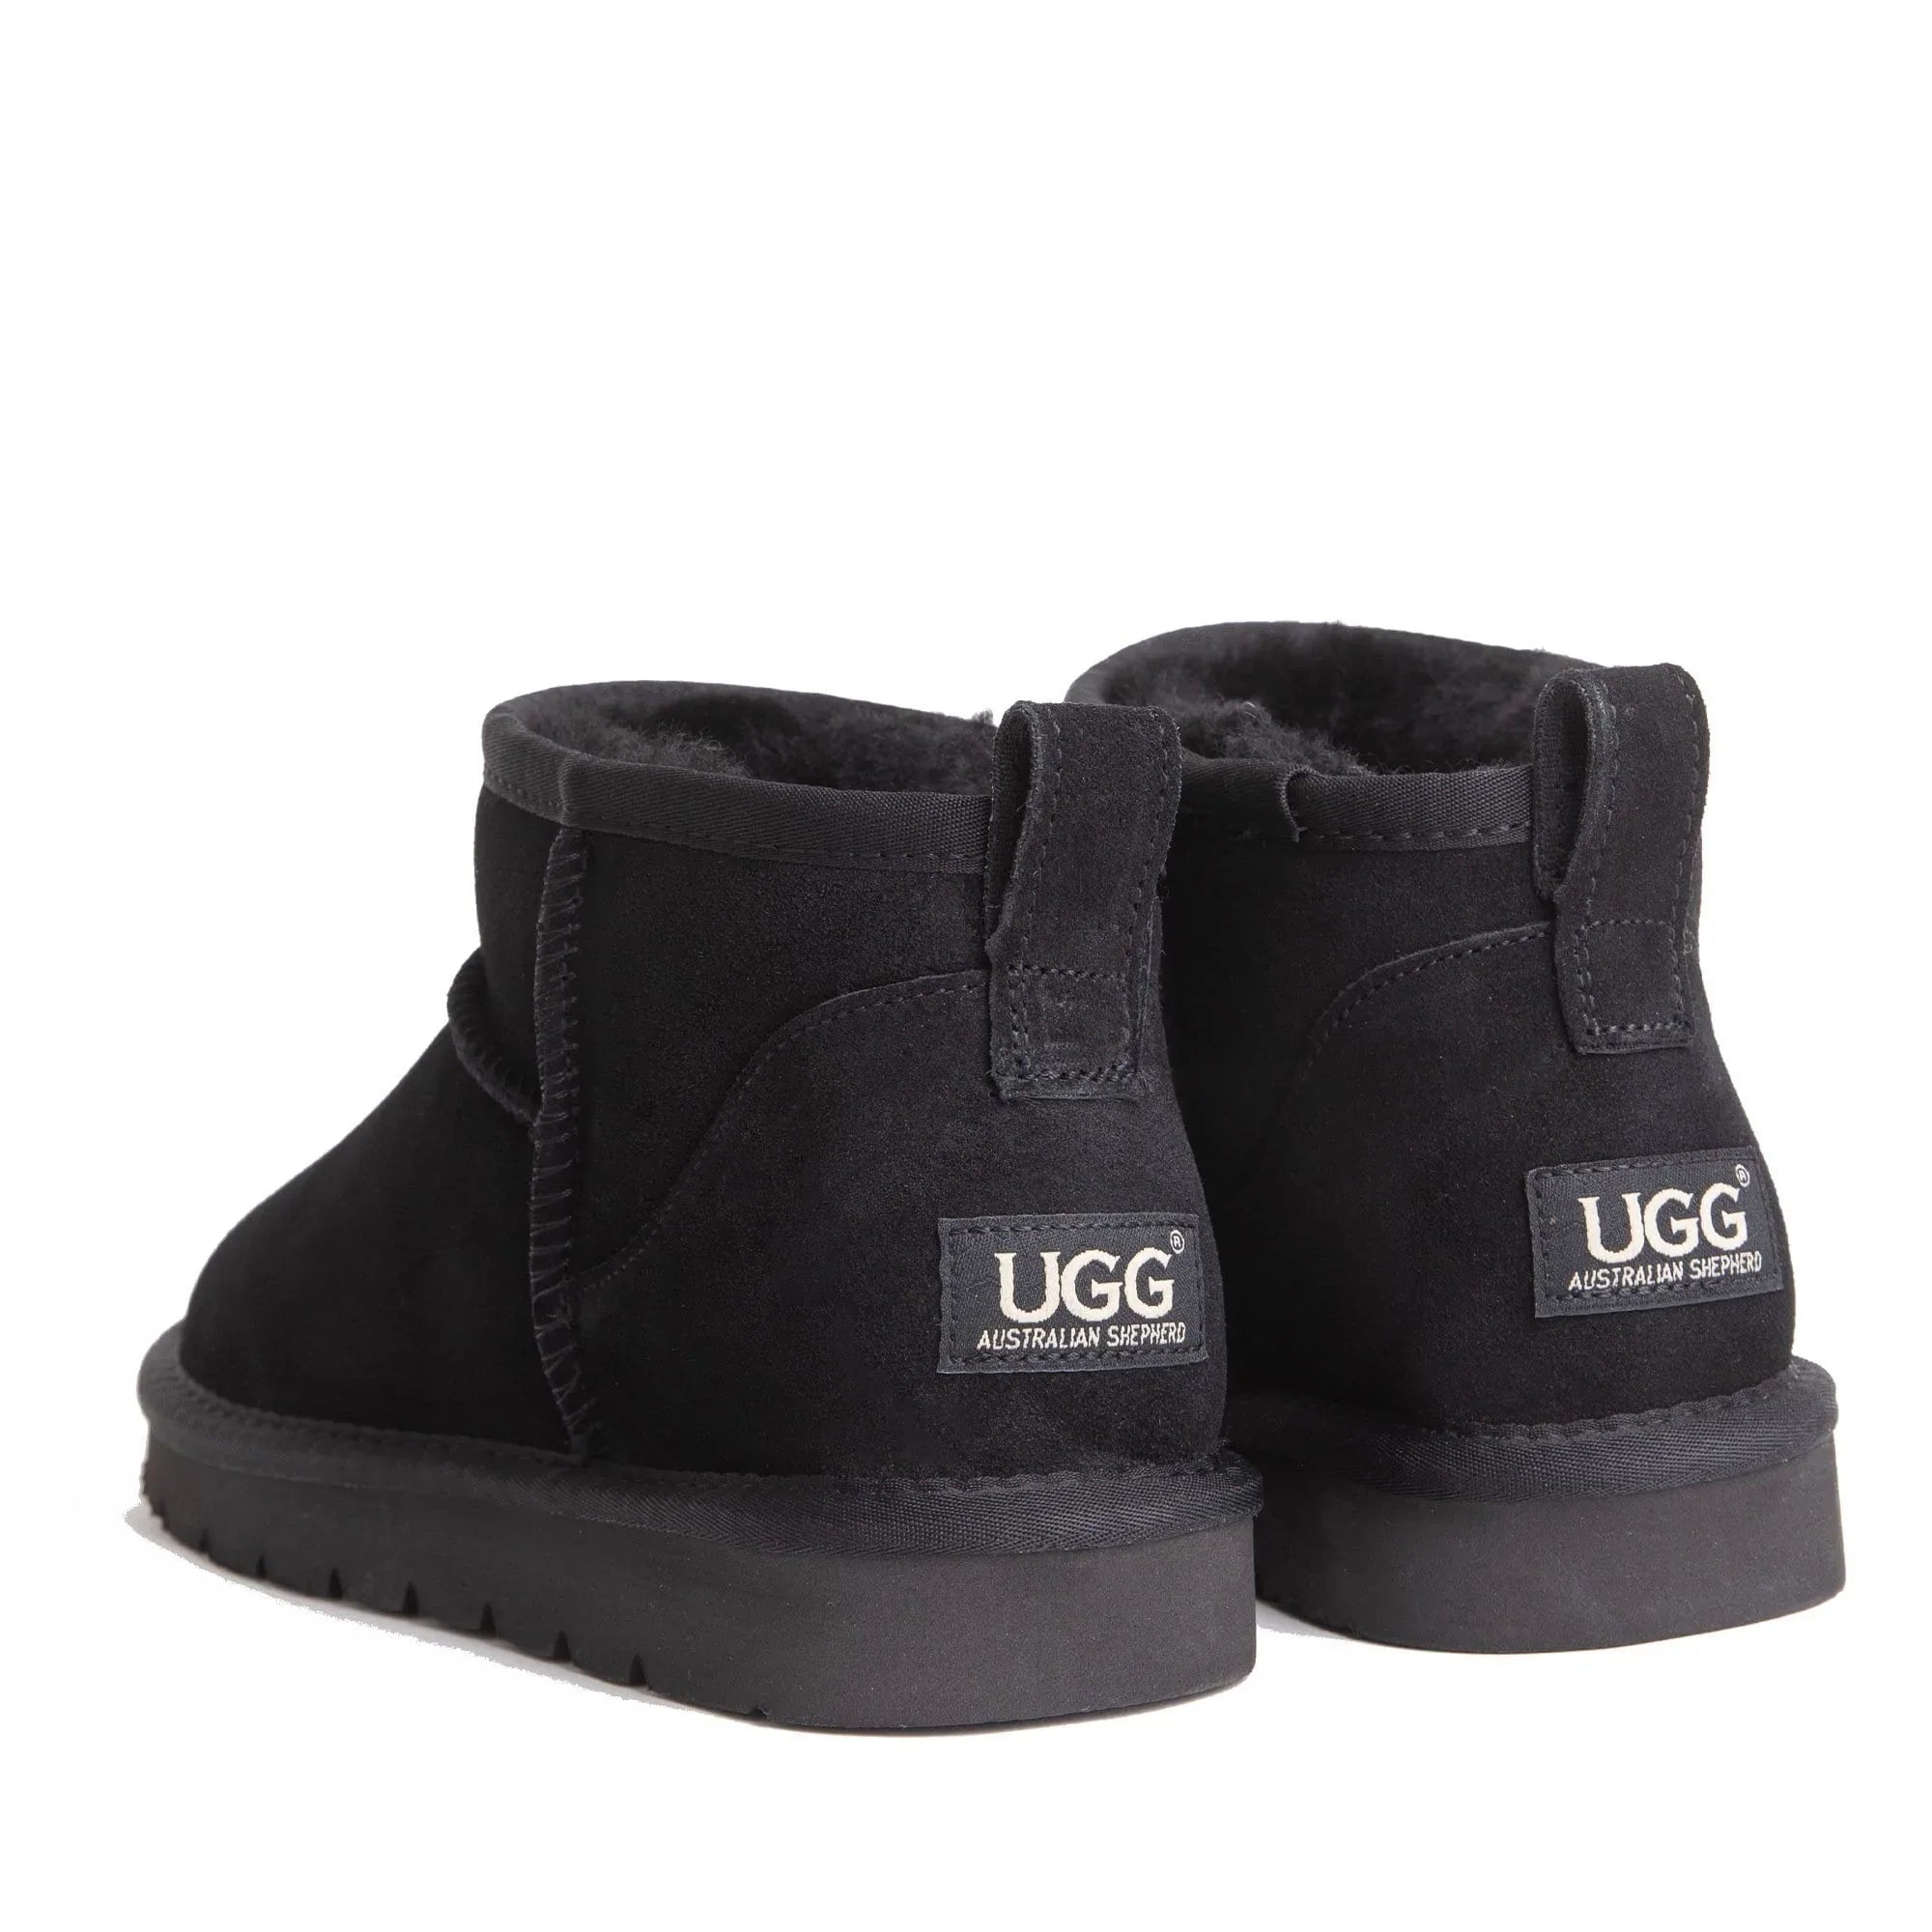 Ugg Boots Kim